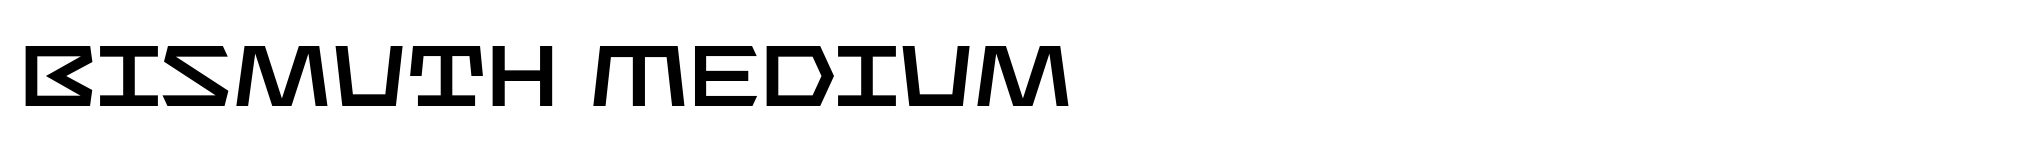 Bismuth Medium image